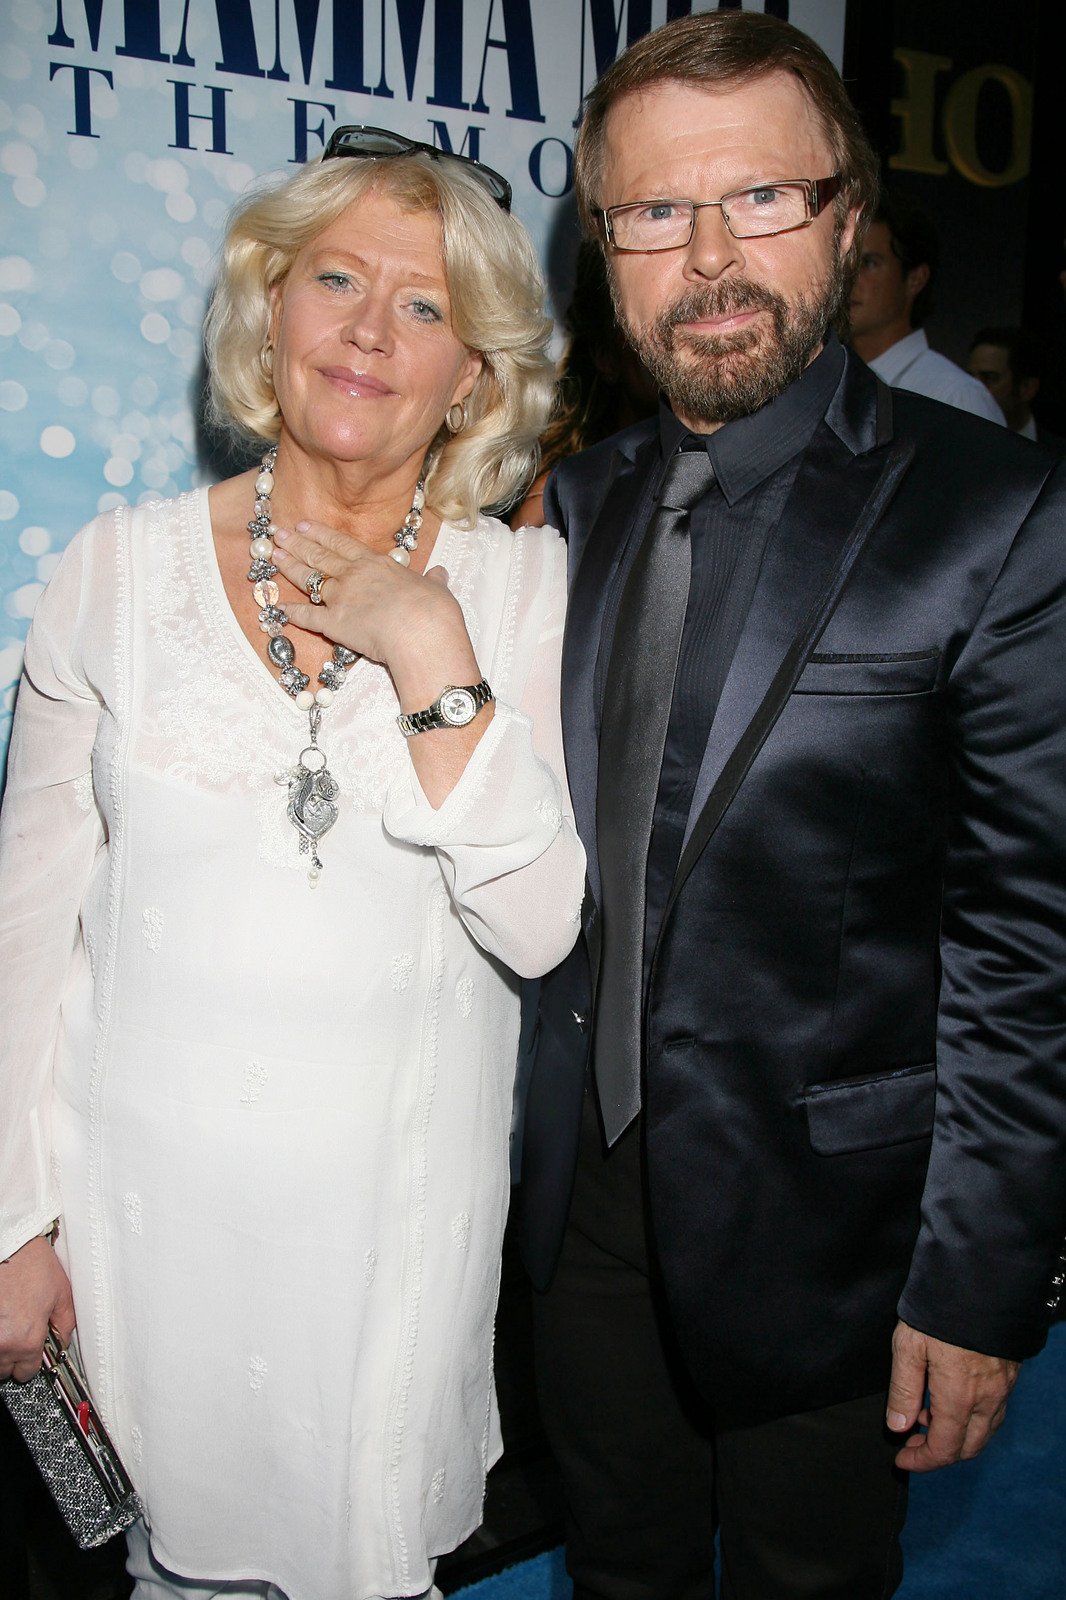 Švédský zpěvák Björn Ulvaeus ze skupiny ABBA se po 41 letech rozvádí s manželkou Lenou.